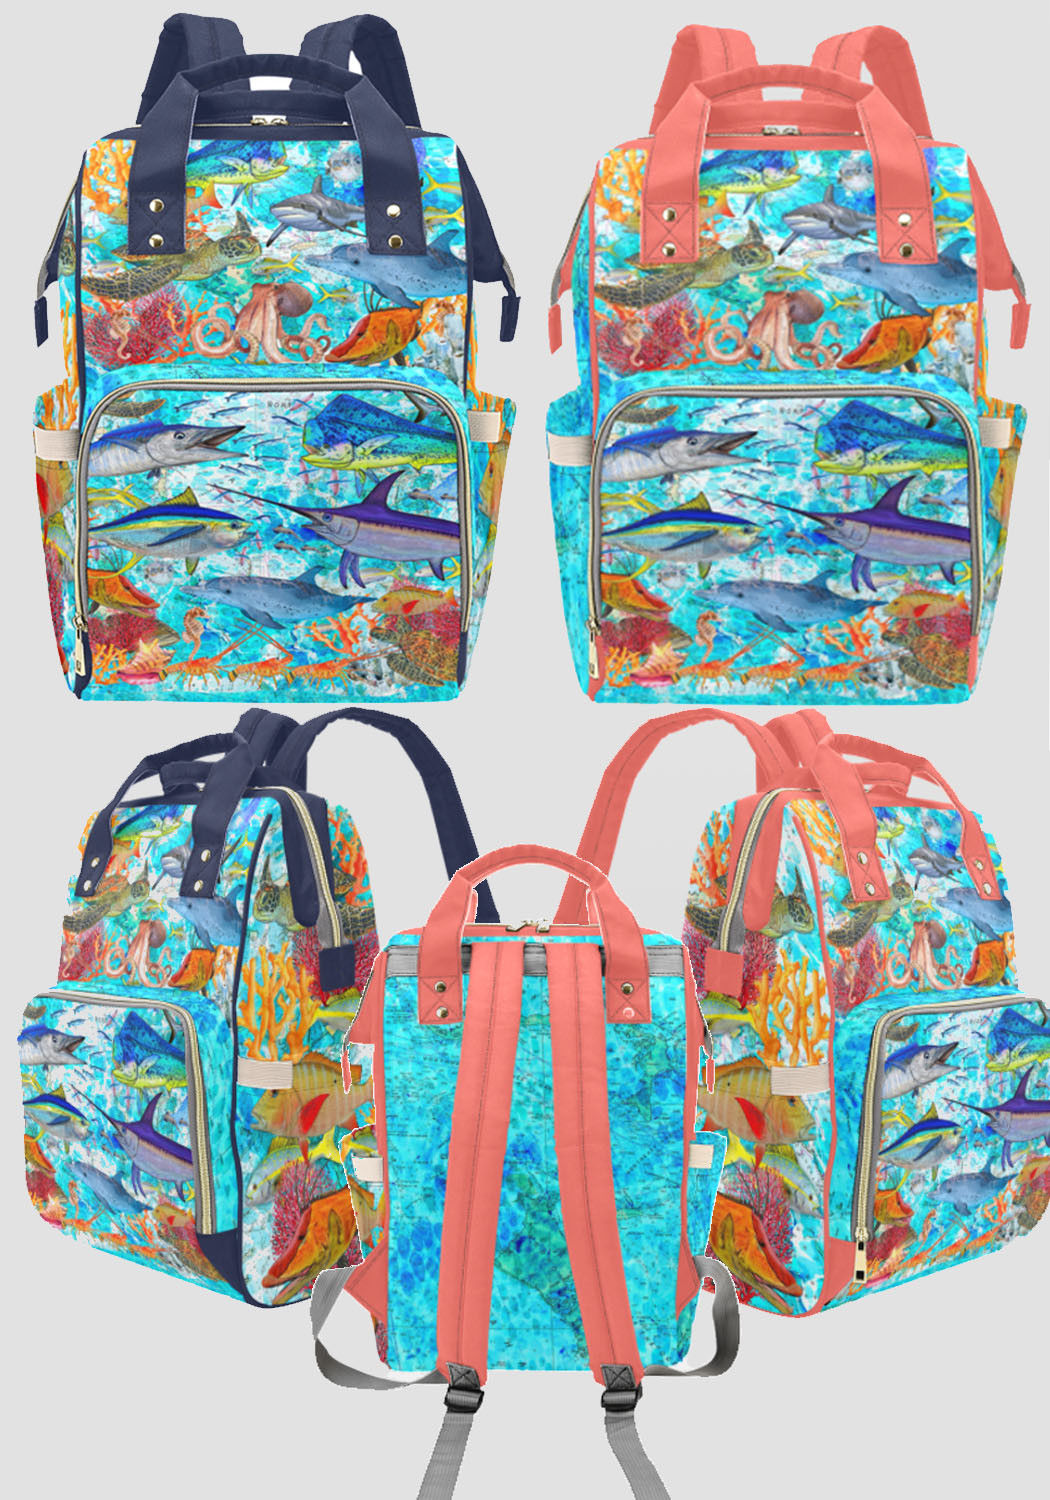 REEF Ocean Multi-Function Backpack or diaper bag - Sporty Girl Apparel